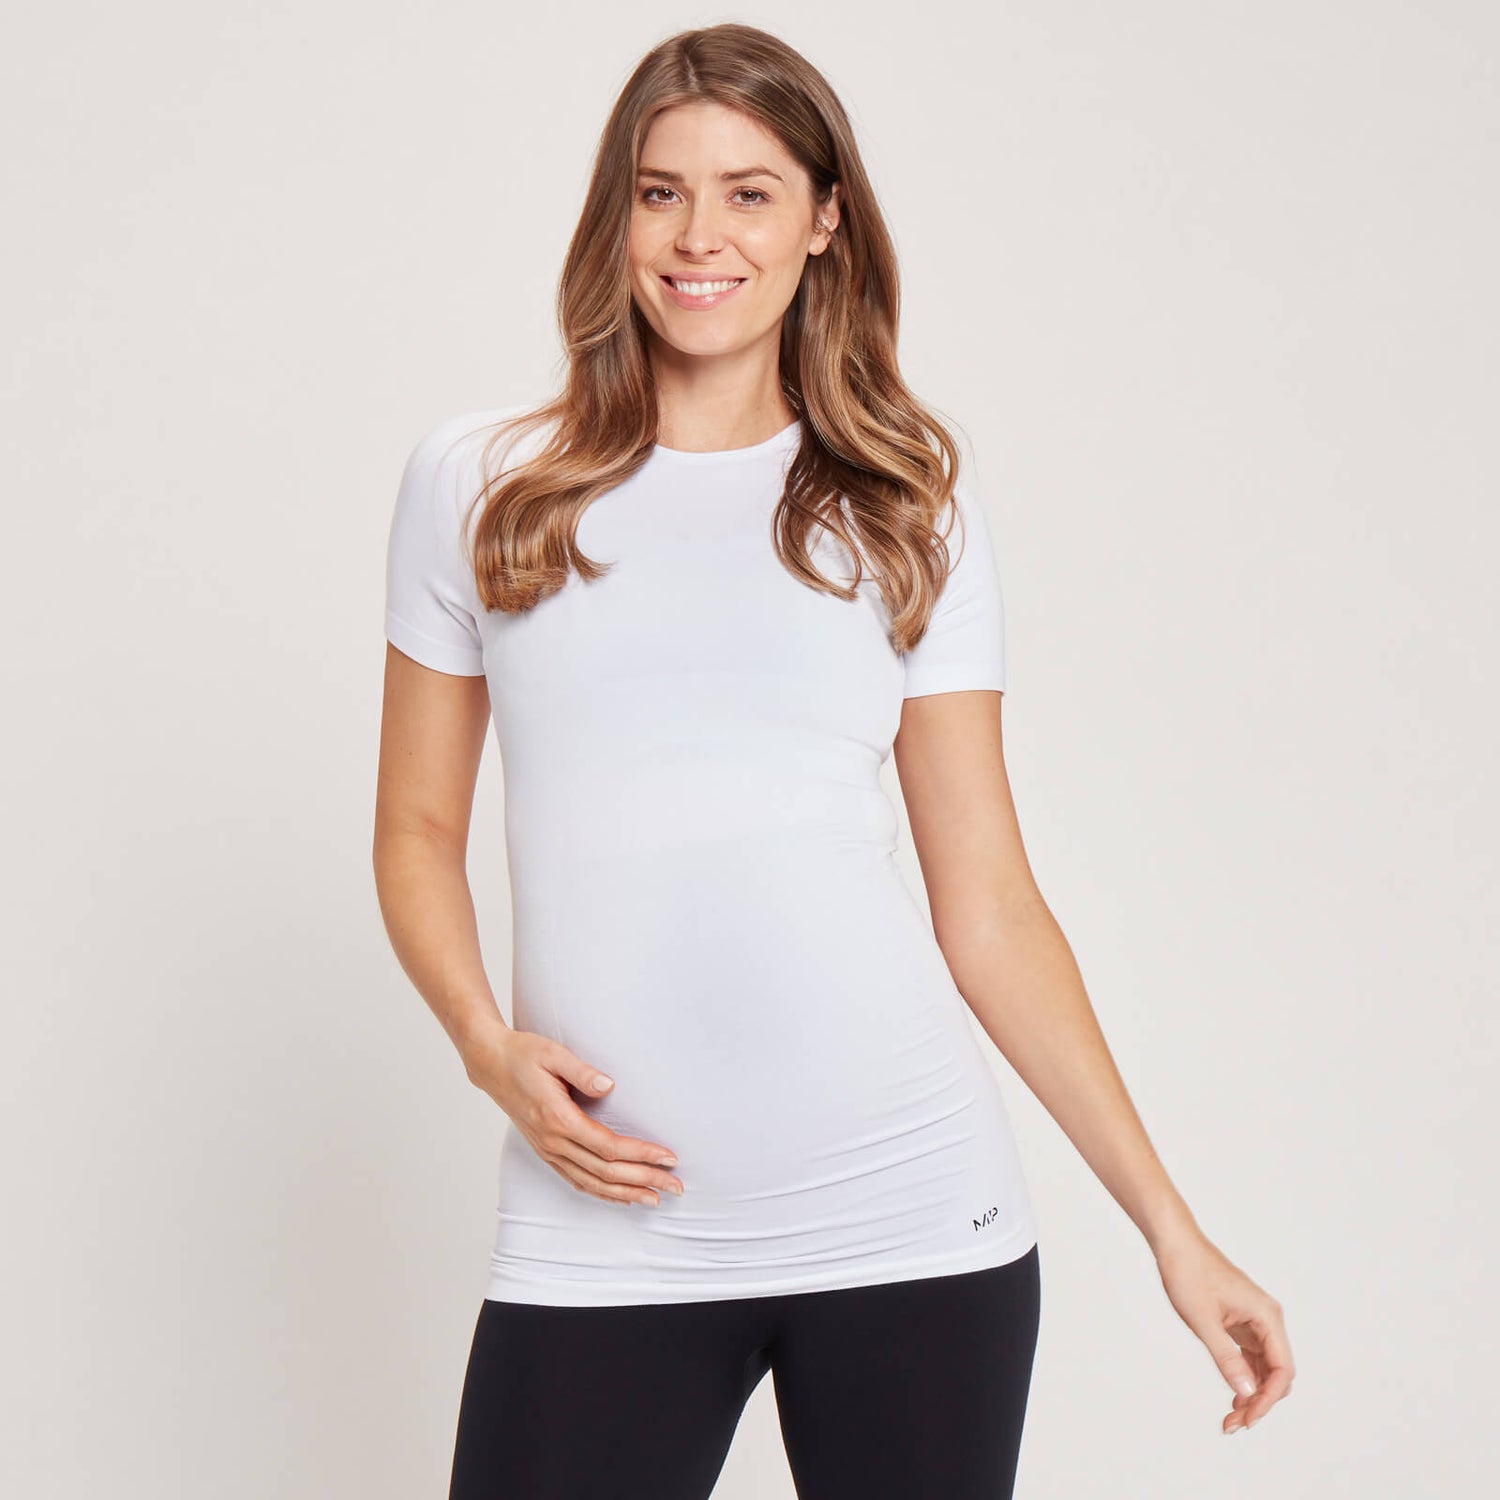 MP T-shirt med korte ærmer uden søm til gravide kvinder - Hvid - XS